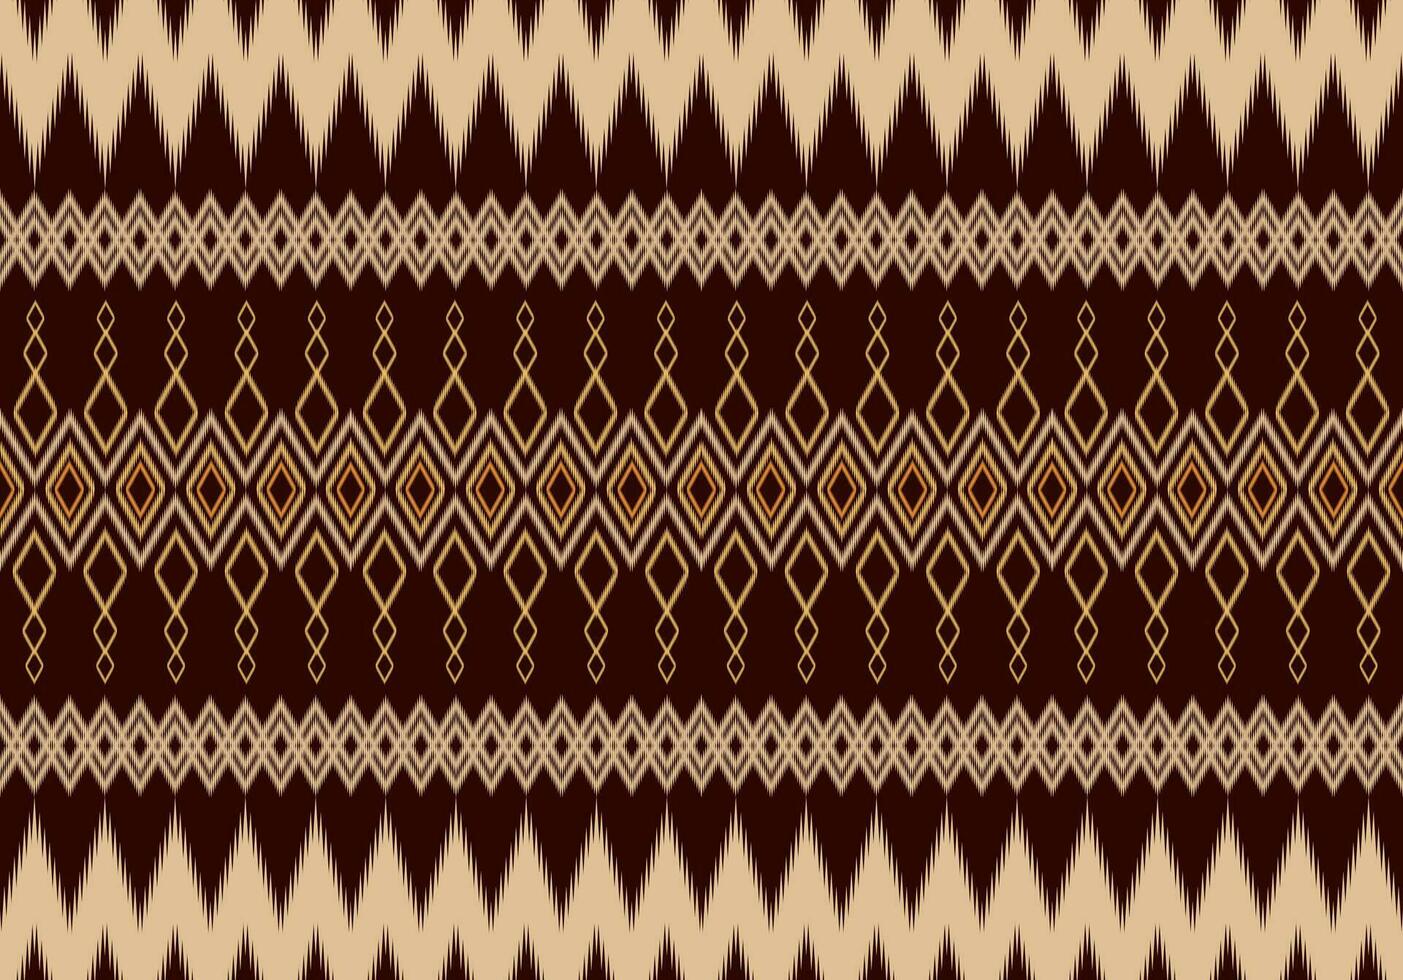 geometrico etnico orientale modello tradizionale design per tessuto,tappeto,abbigliamento,tessile,batik.etnico astratto ikat senza soluzione di continuità modello nel ricamo.tribale stile. vettore